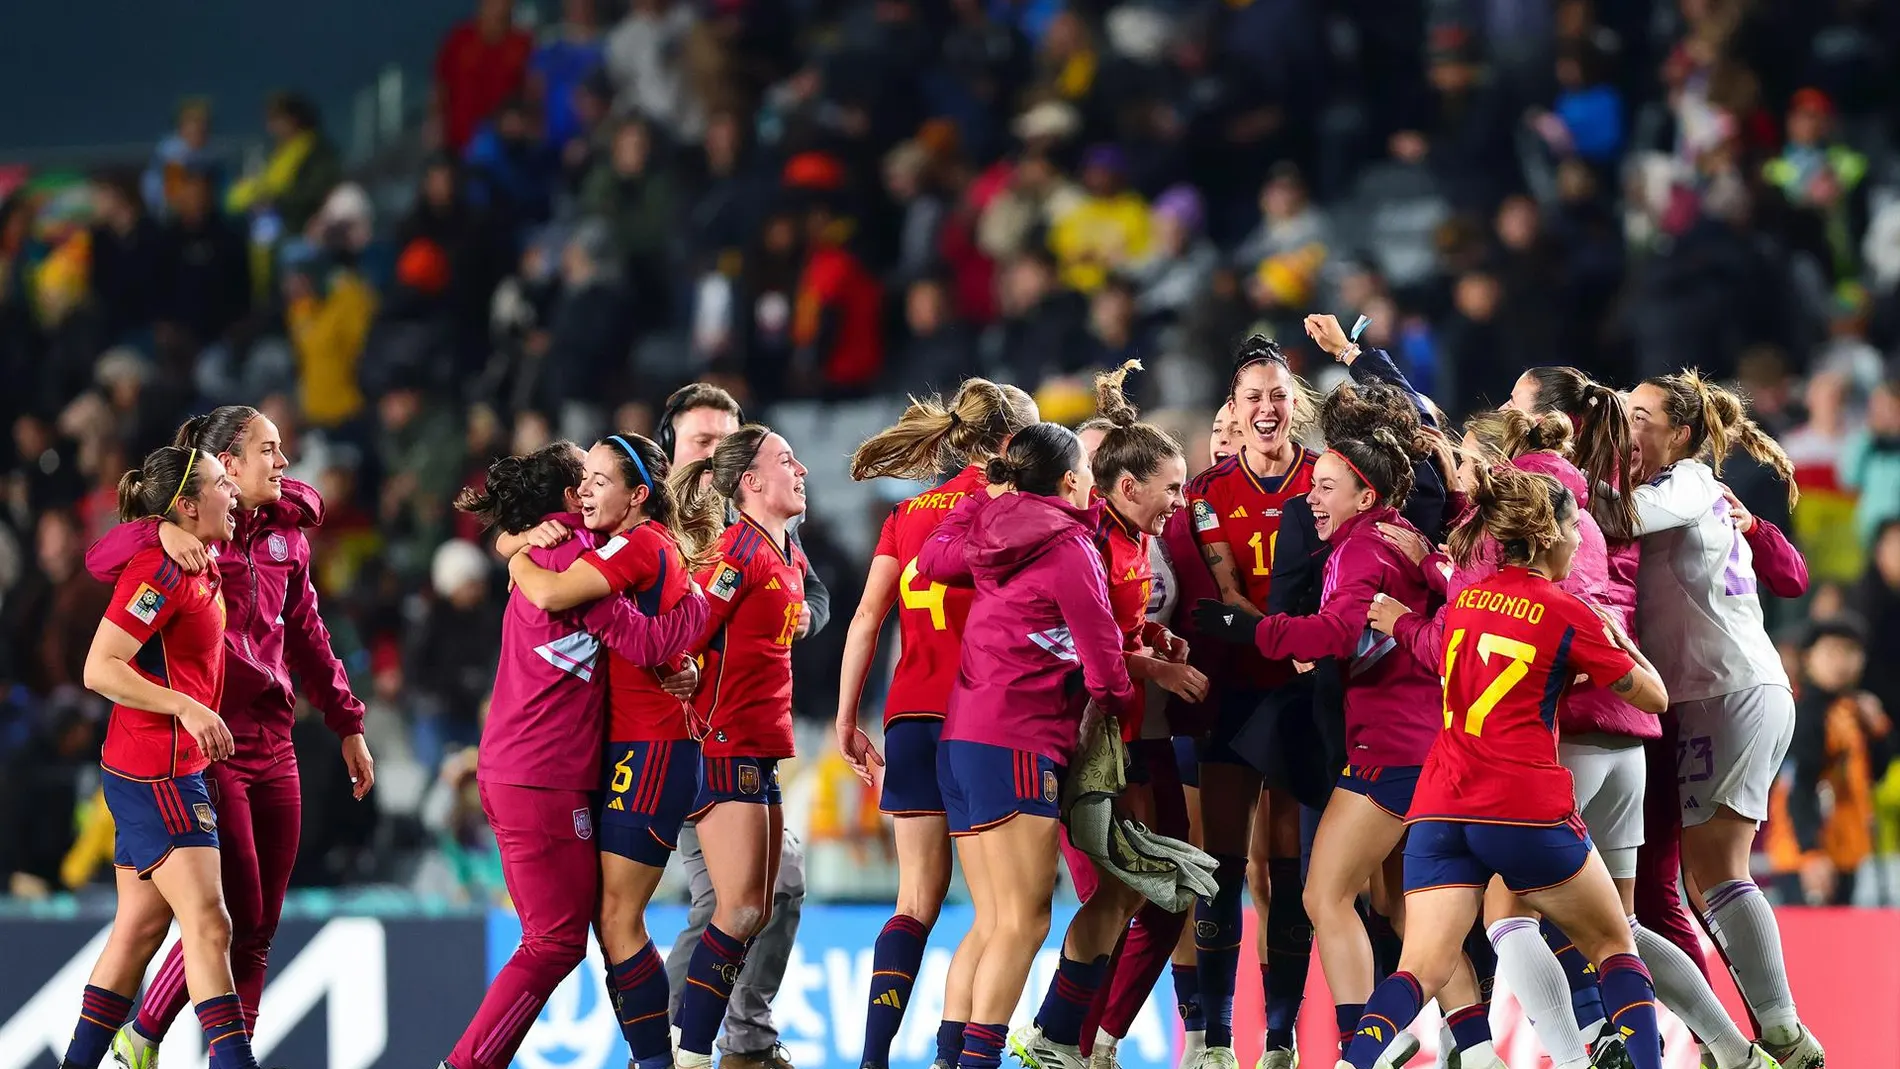 La selección española disputará su primera final en un Mundial de fútbol femenino 